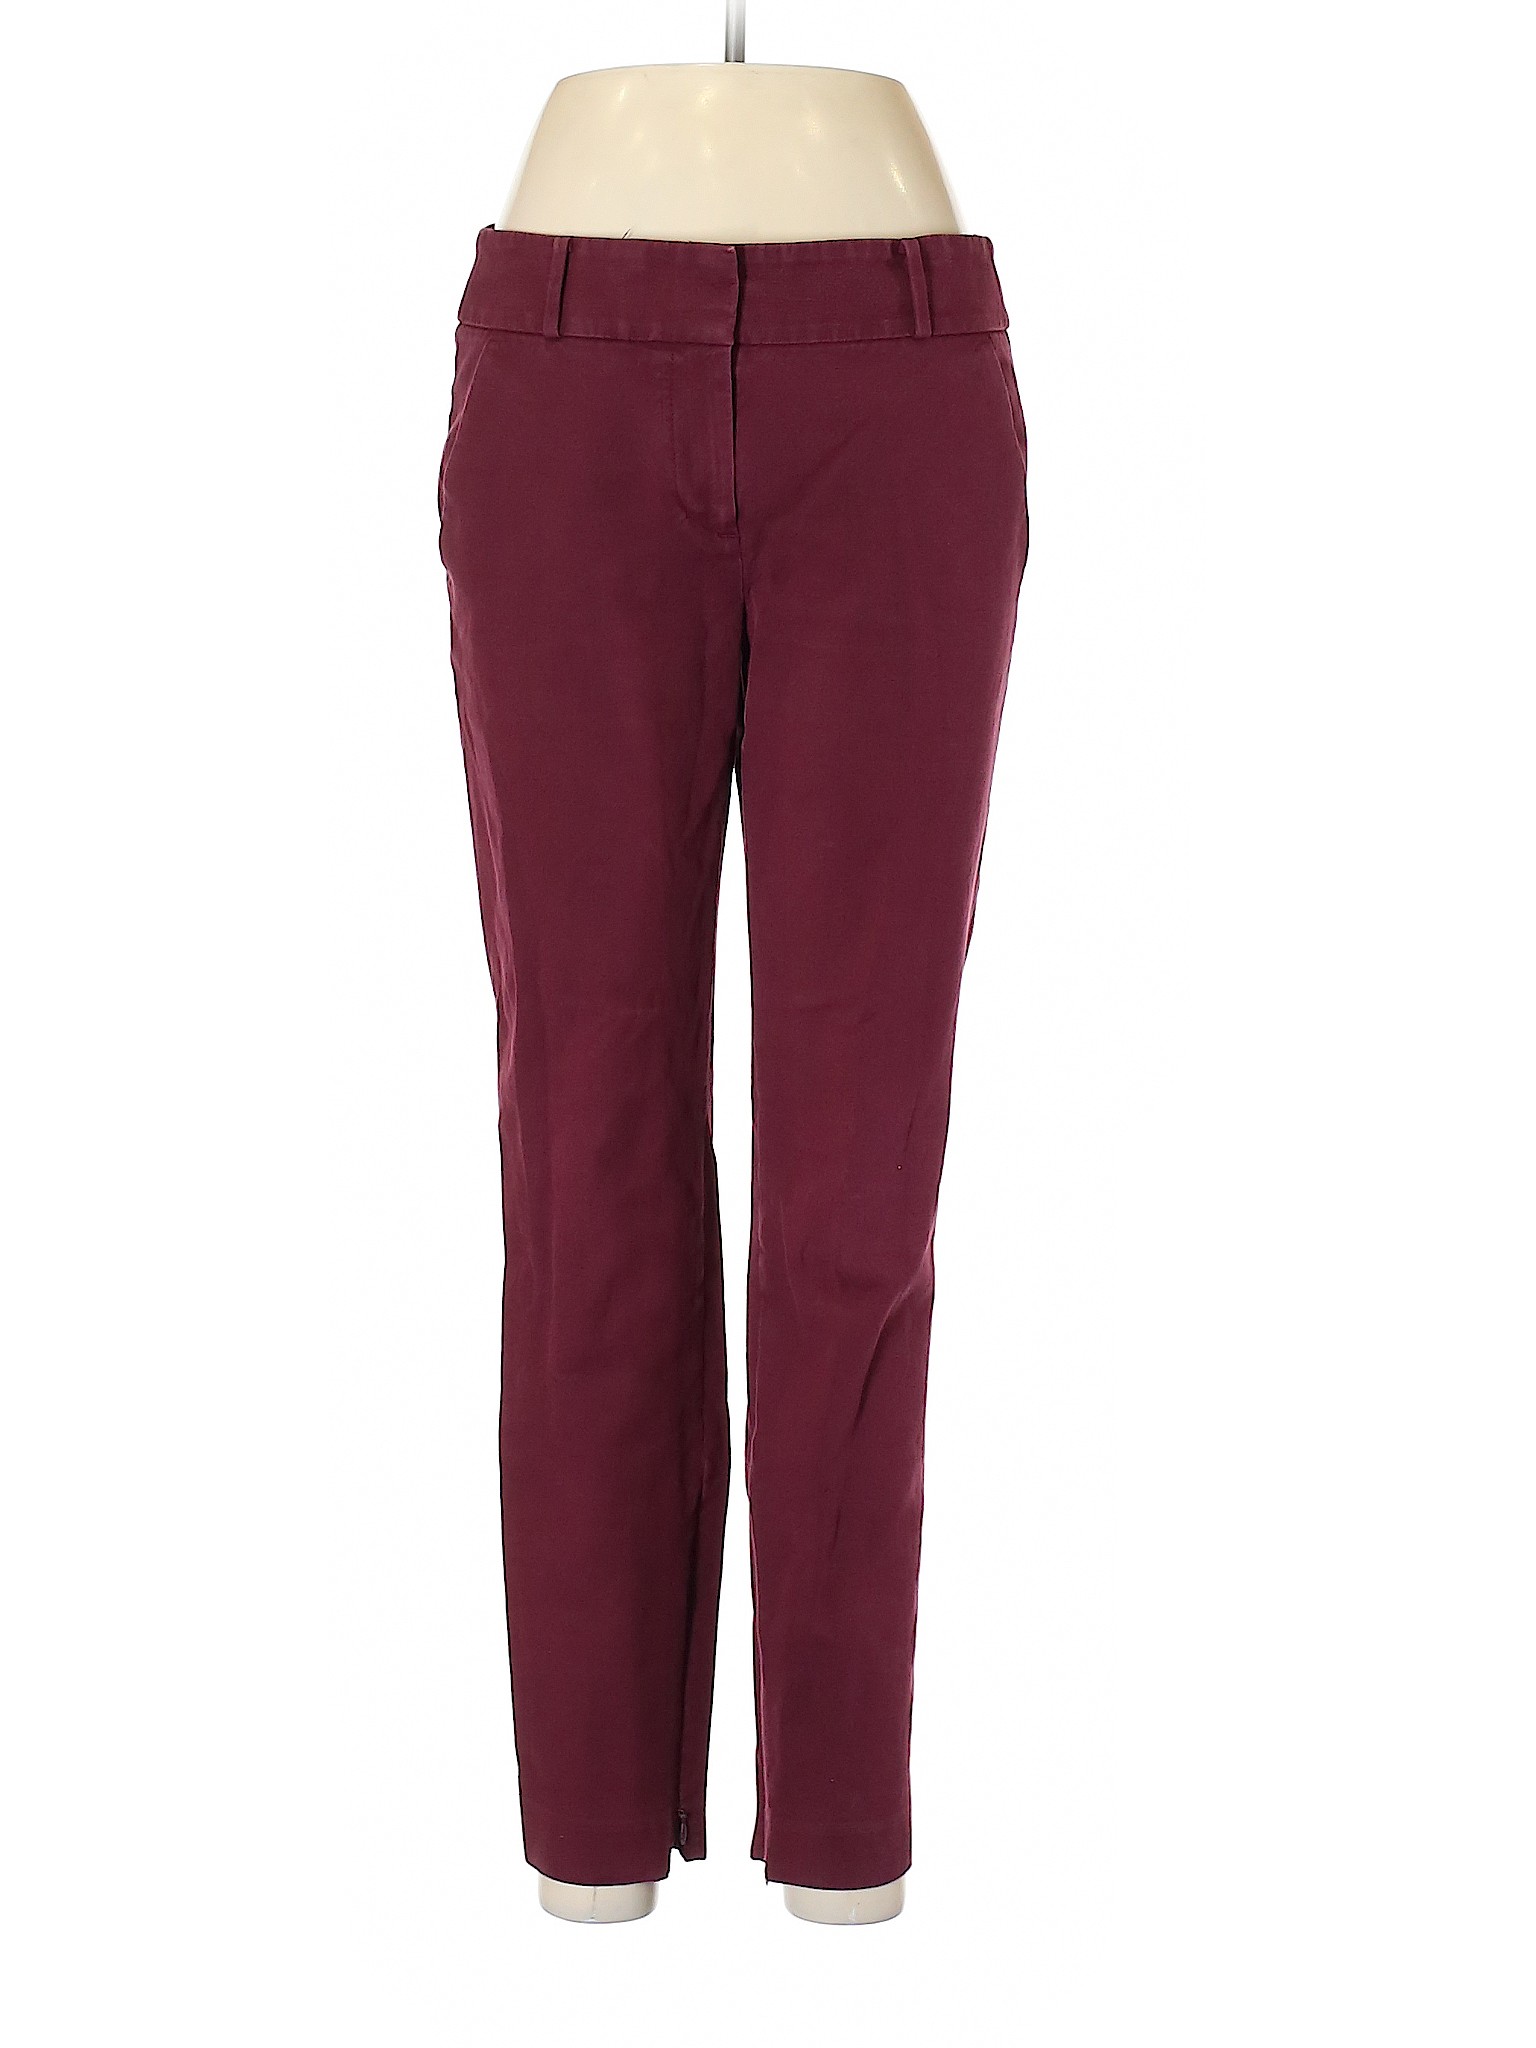 Ann Taylor LOFT Women Red Casual Pants 6 | eBay